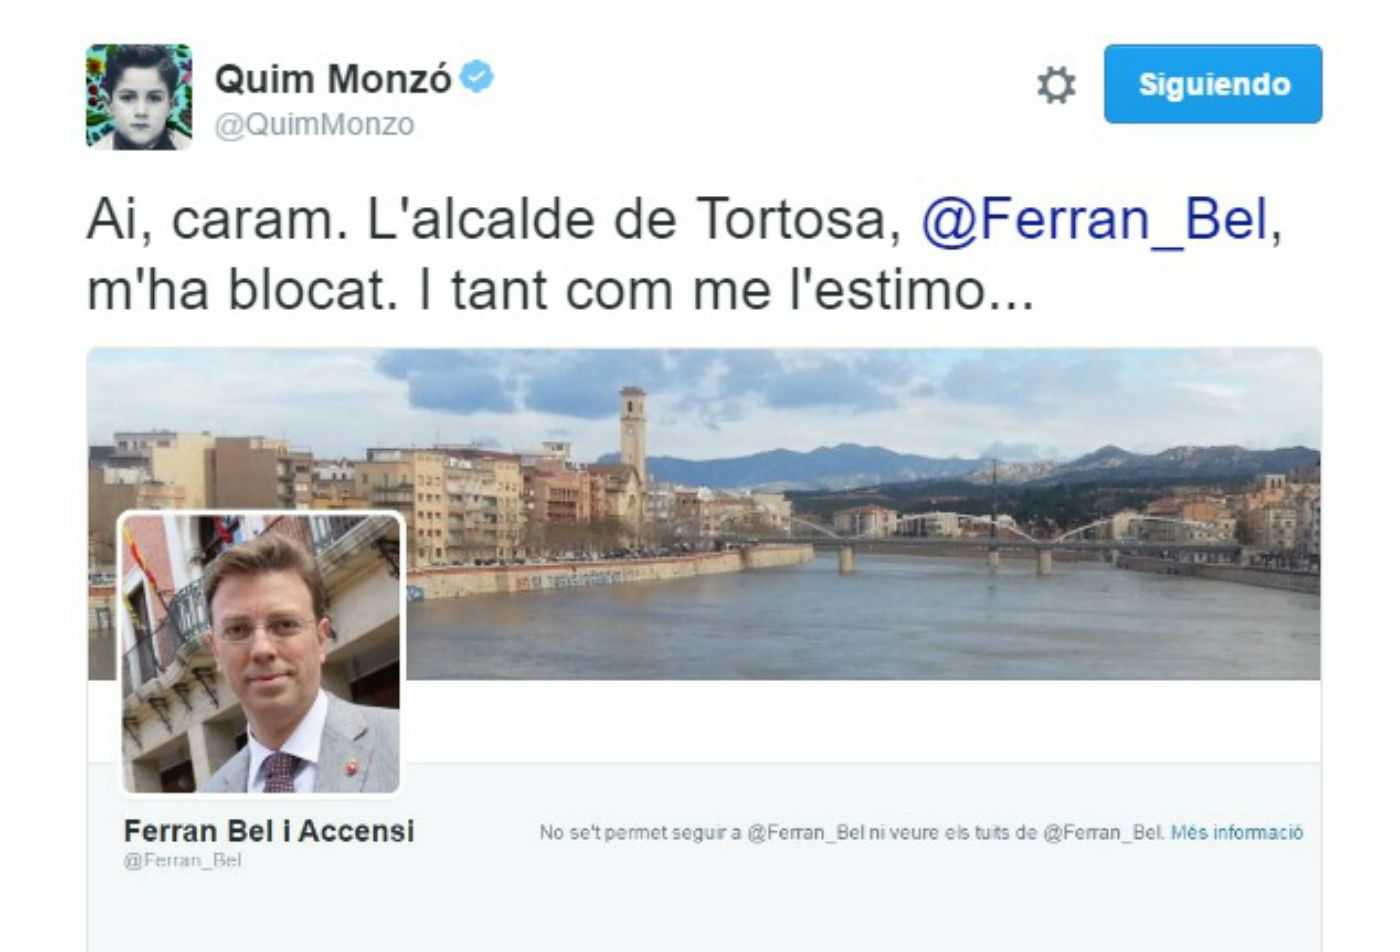 El alcalde de Tortosa bloquea a Quim Monzó en Twitter